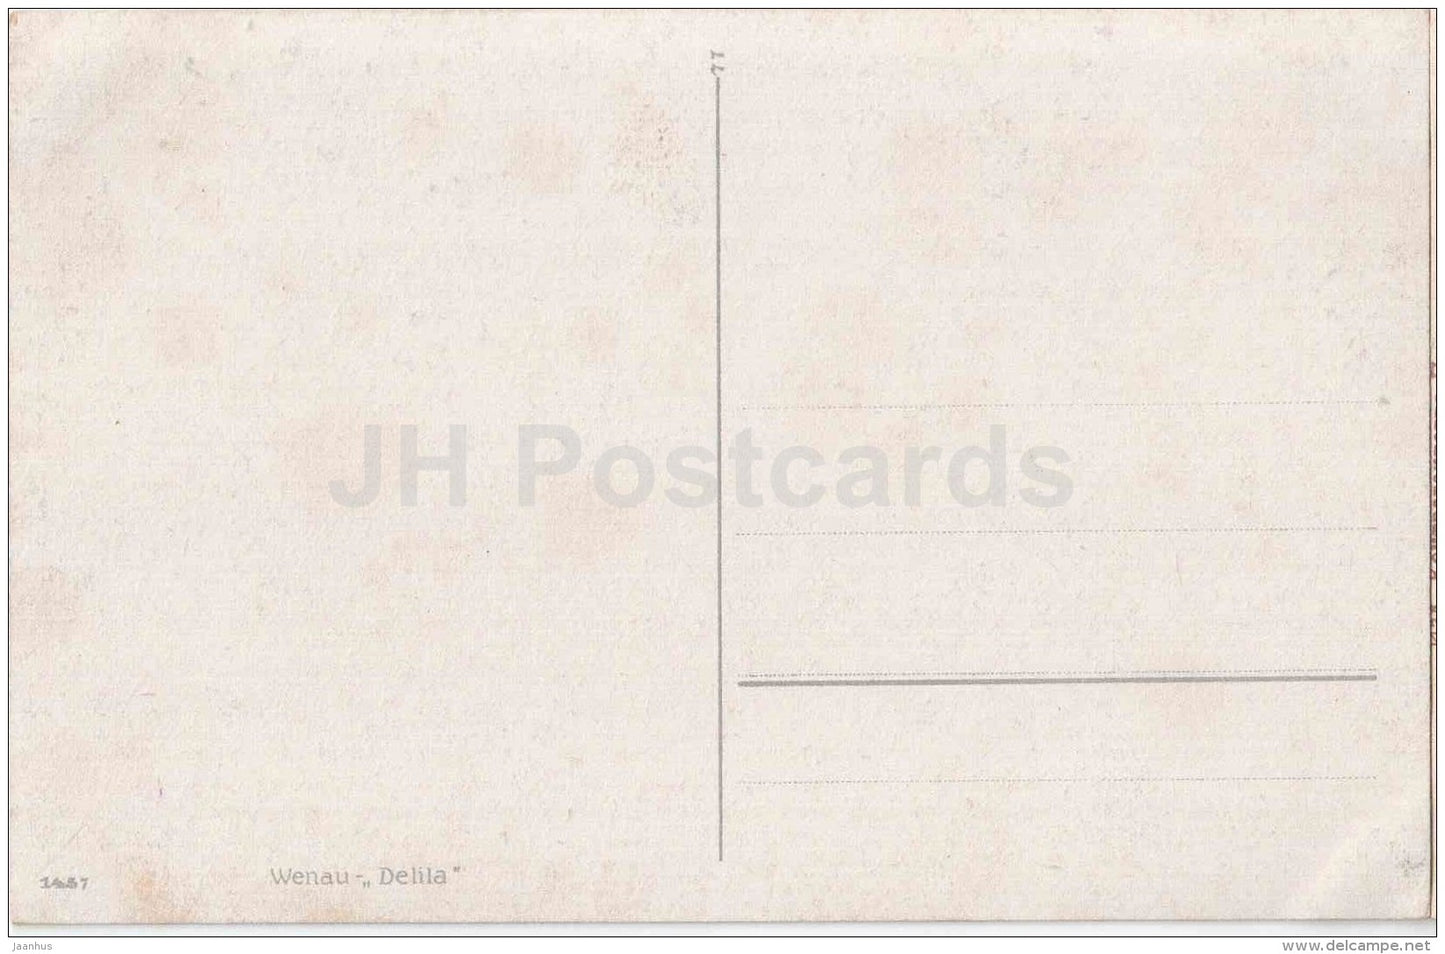 Wenau - Delila - 1457 - art - unused - JH Postcards